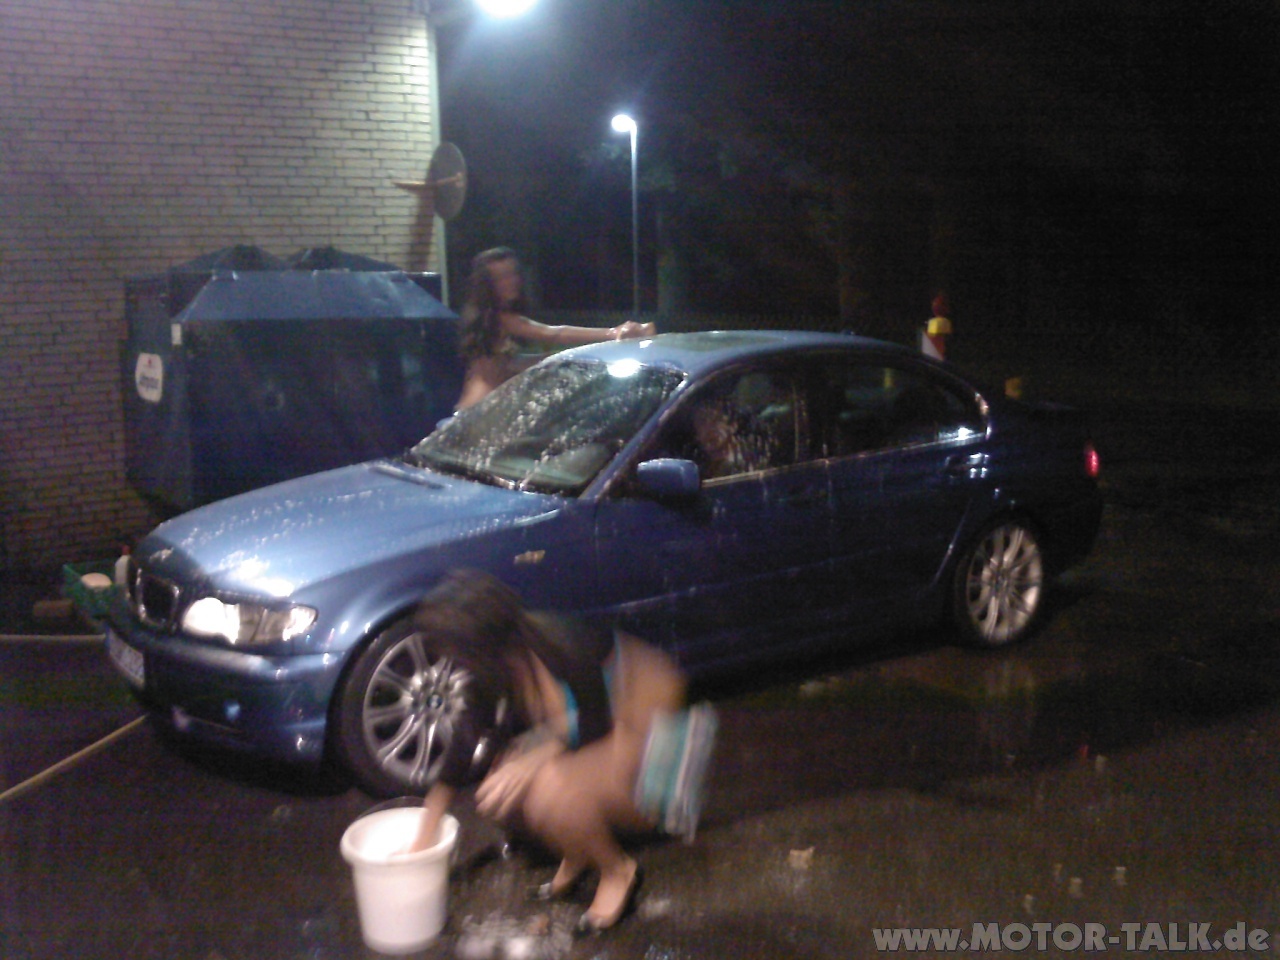 Bmw courtesy car wash #4